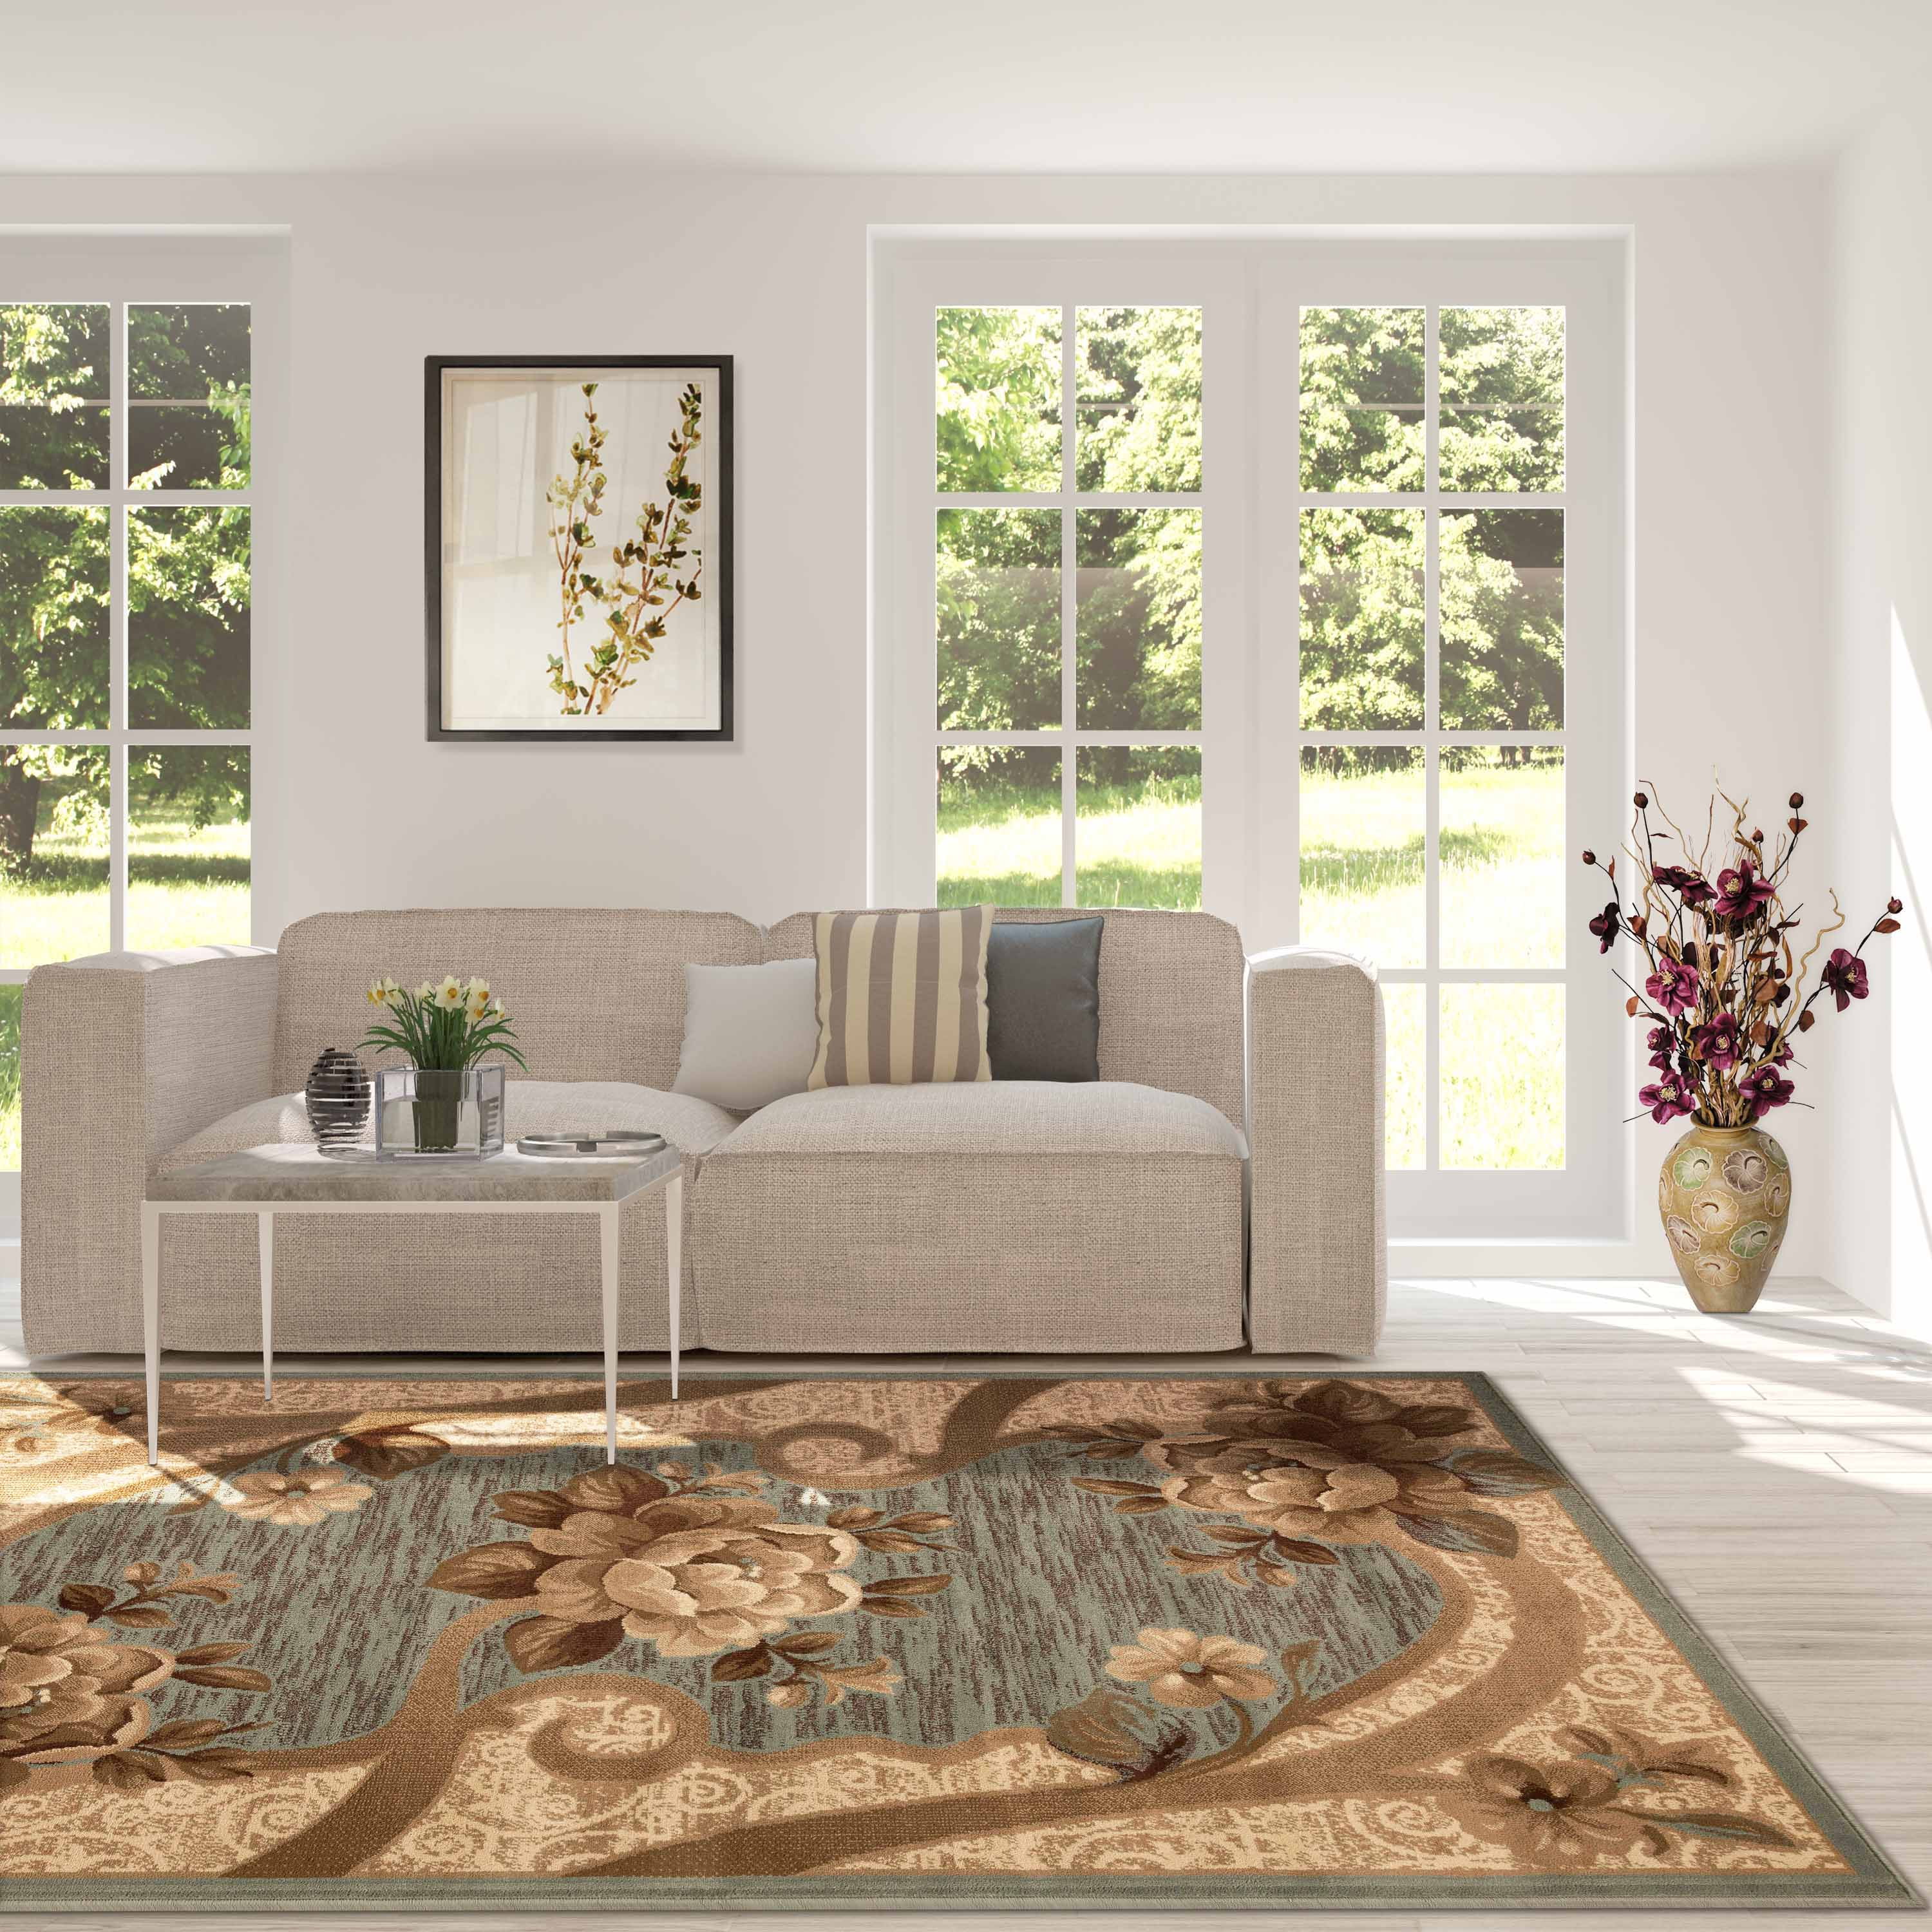 Supreme Iconic Room Decor Carpet - Newcolor7